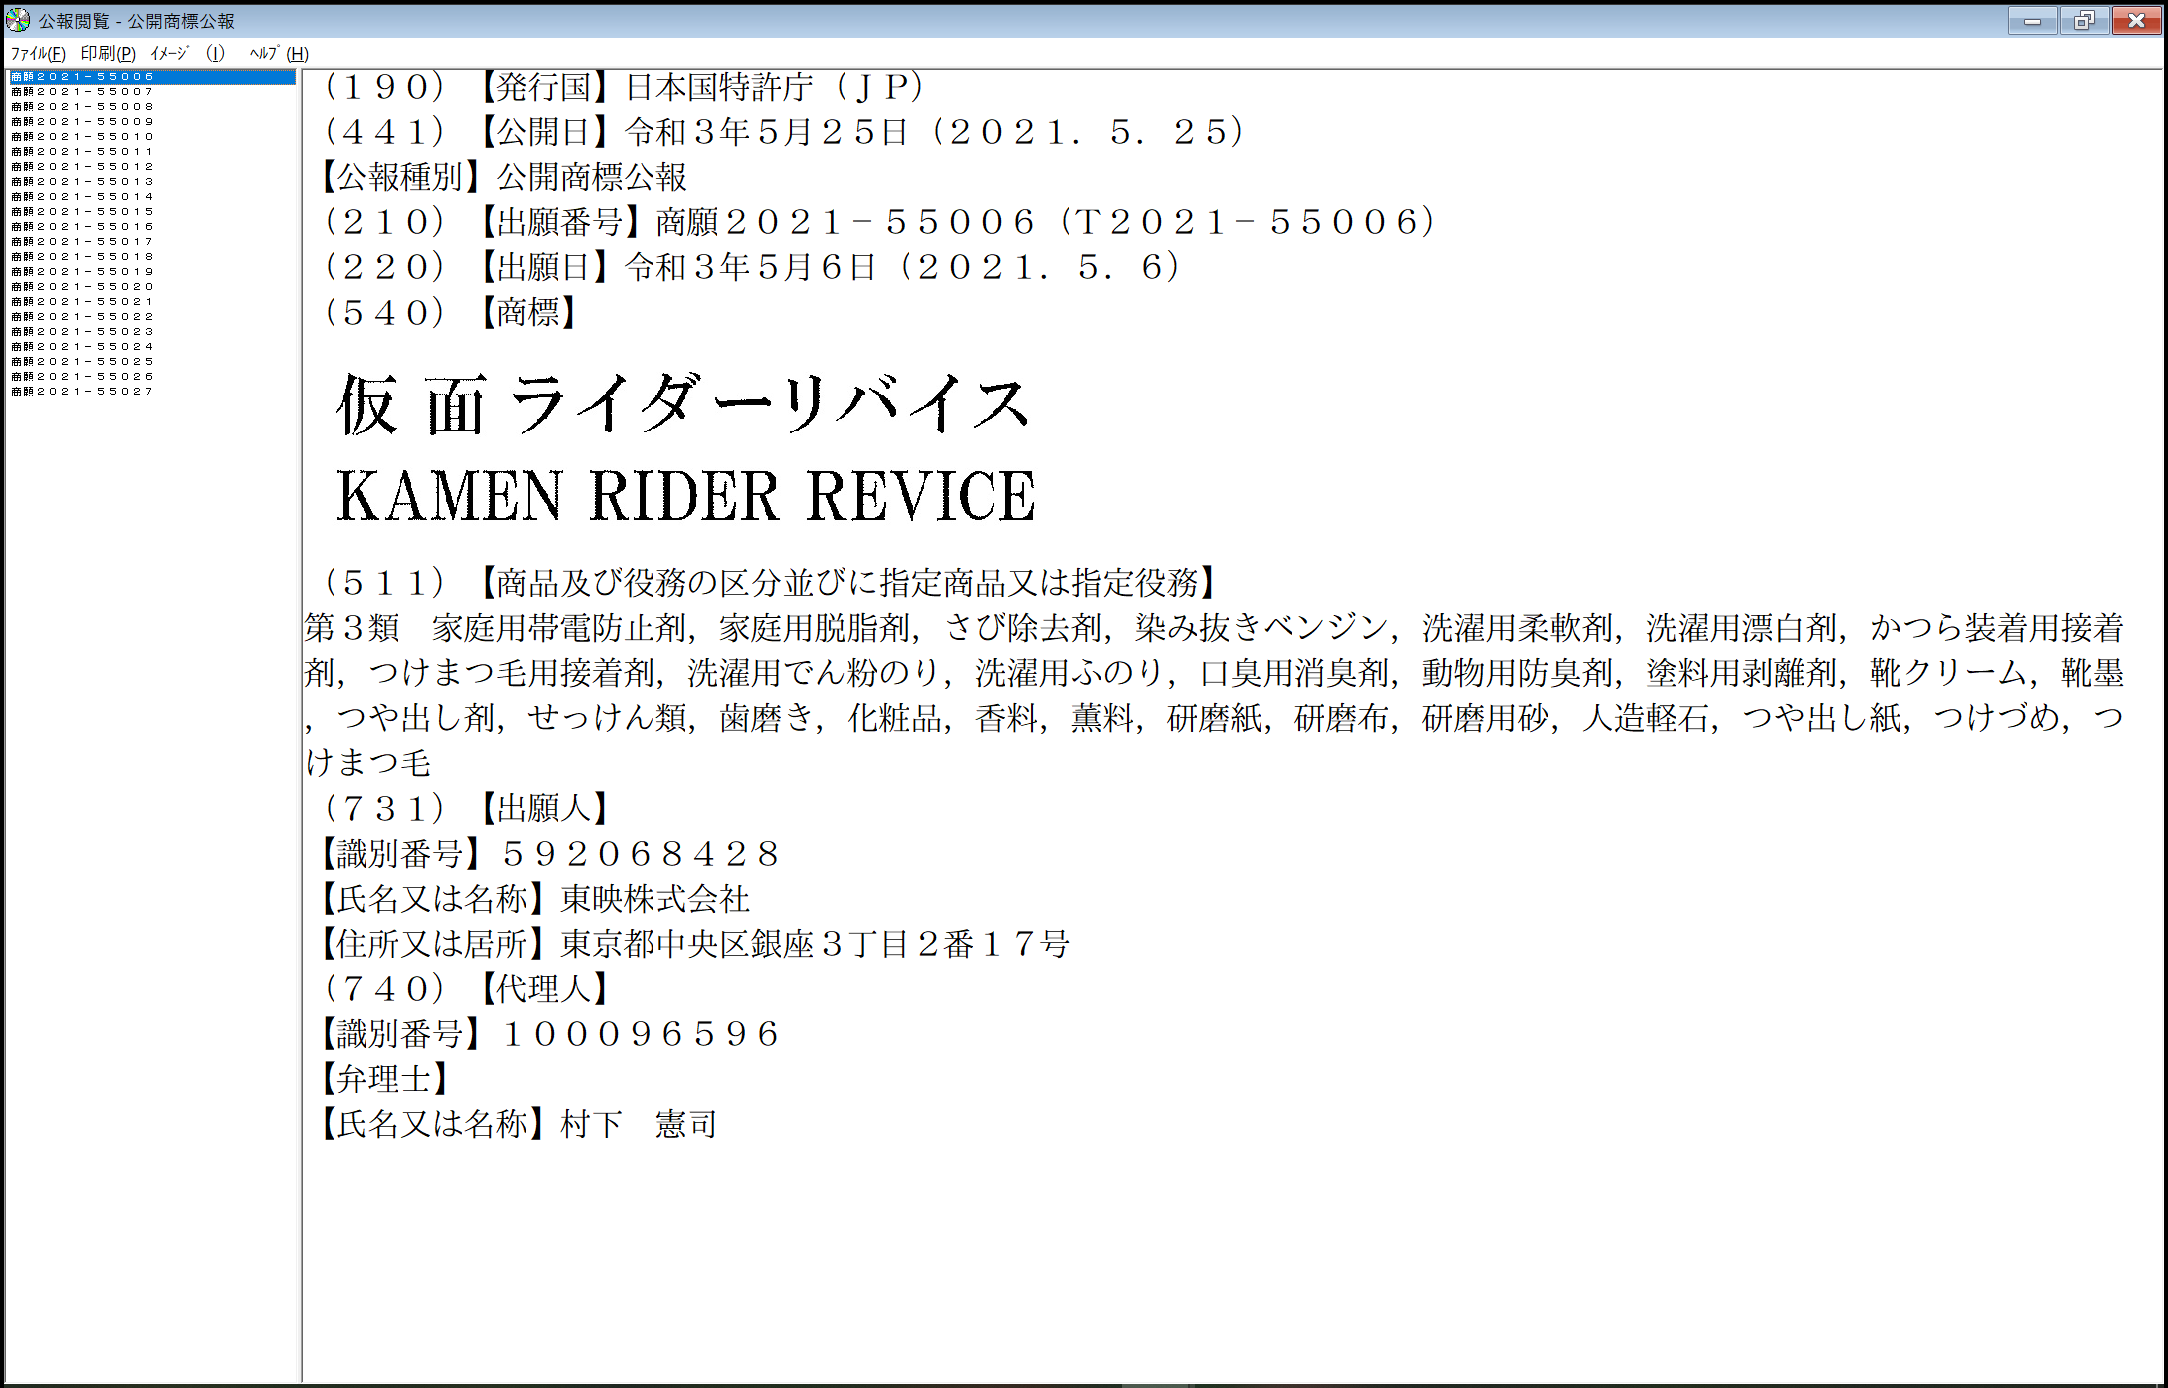 东映已注册假面骑士新商标“假面骑士Revice” 或将有新作